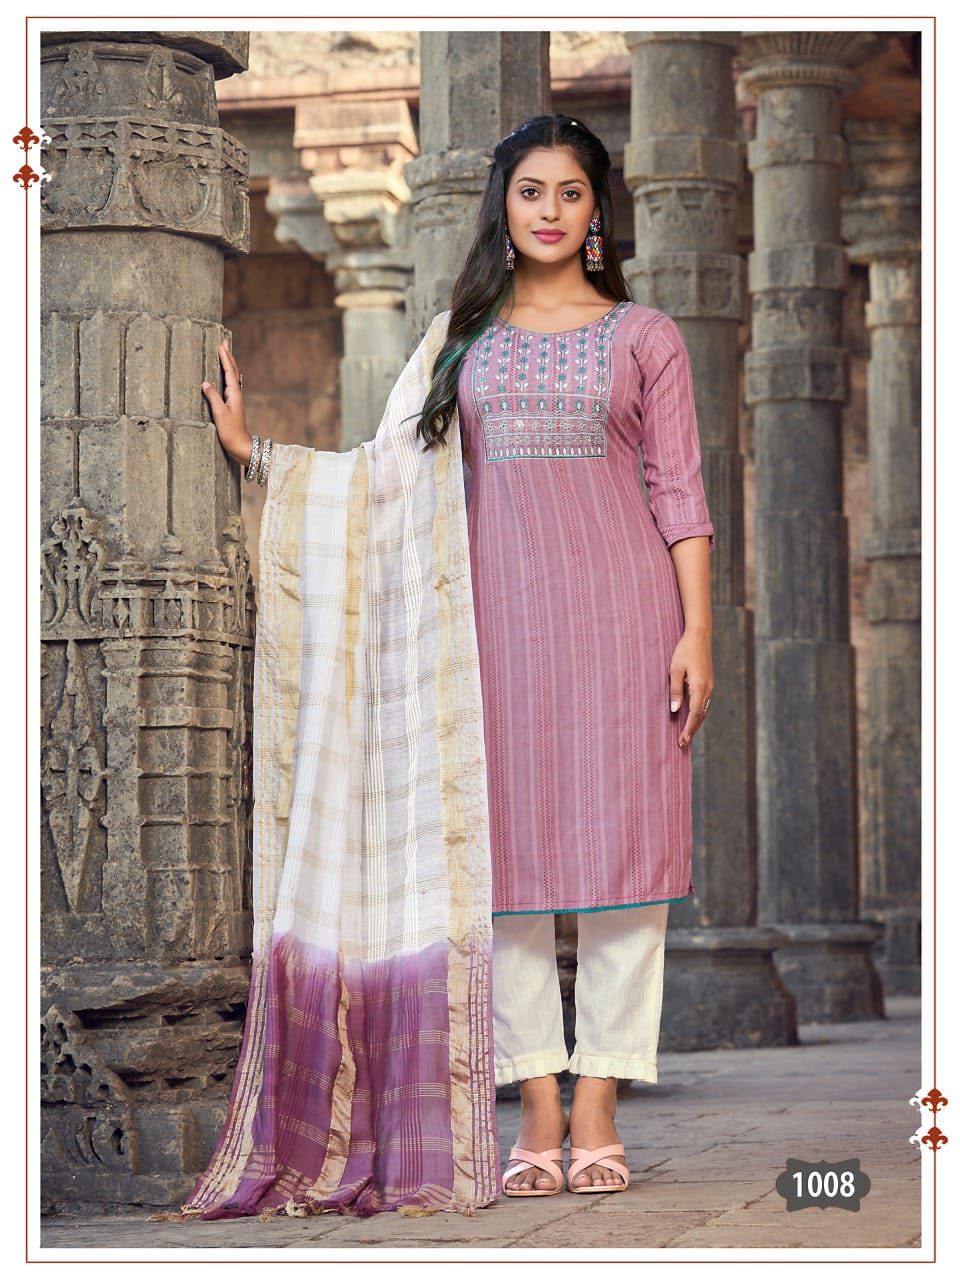 Silk kurti | Stylish work outfits, Pakistani fancy dresses, Trendy fashion  tops